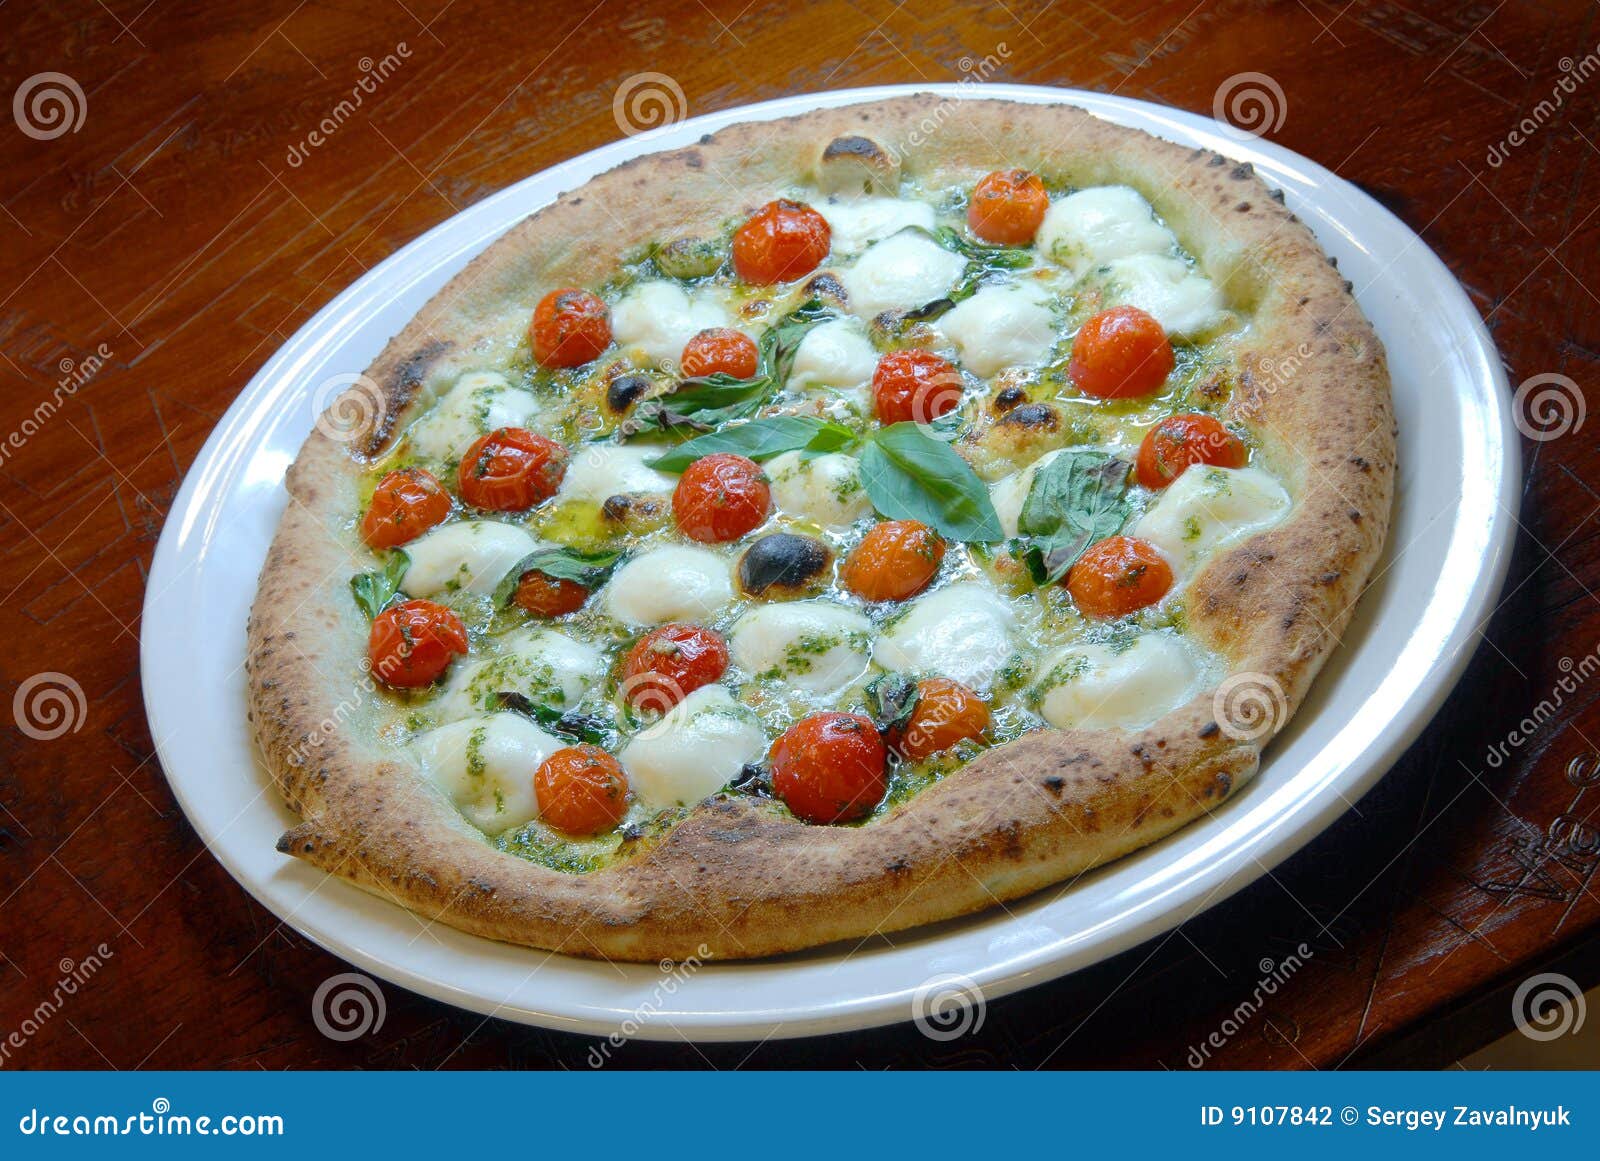 что приготовить с сыром моцарелла для пиццы фото 91